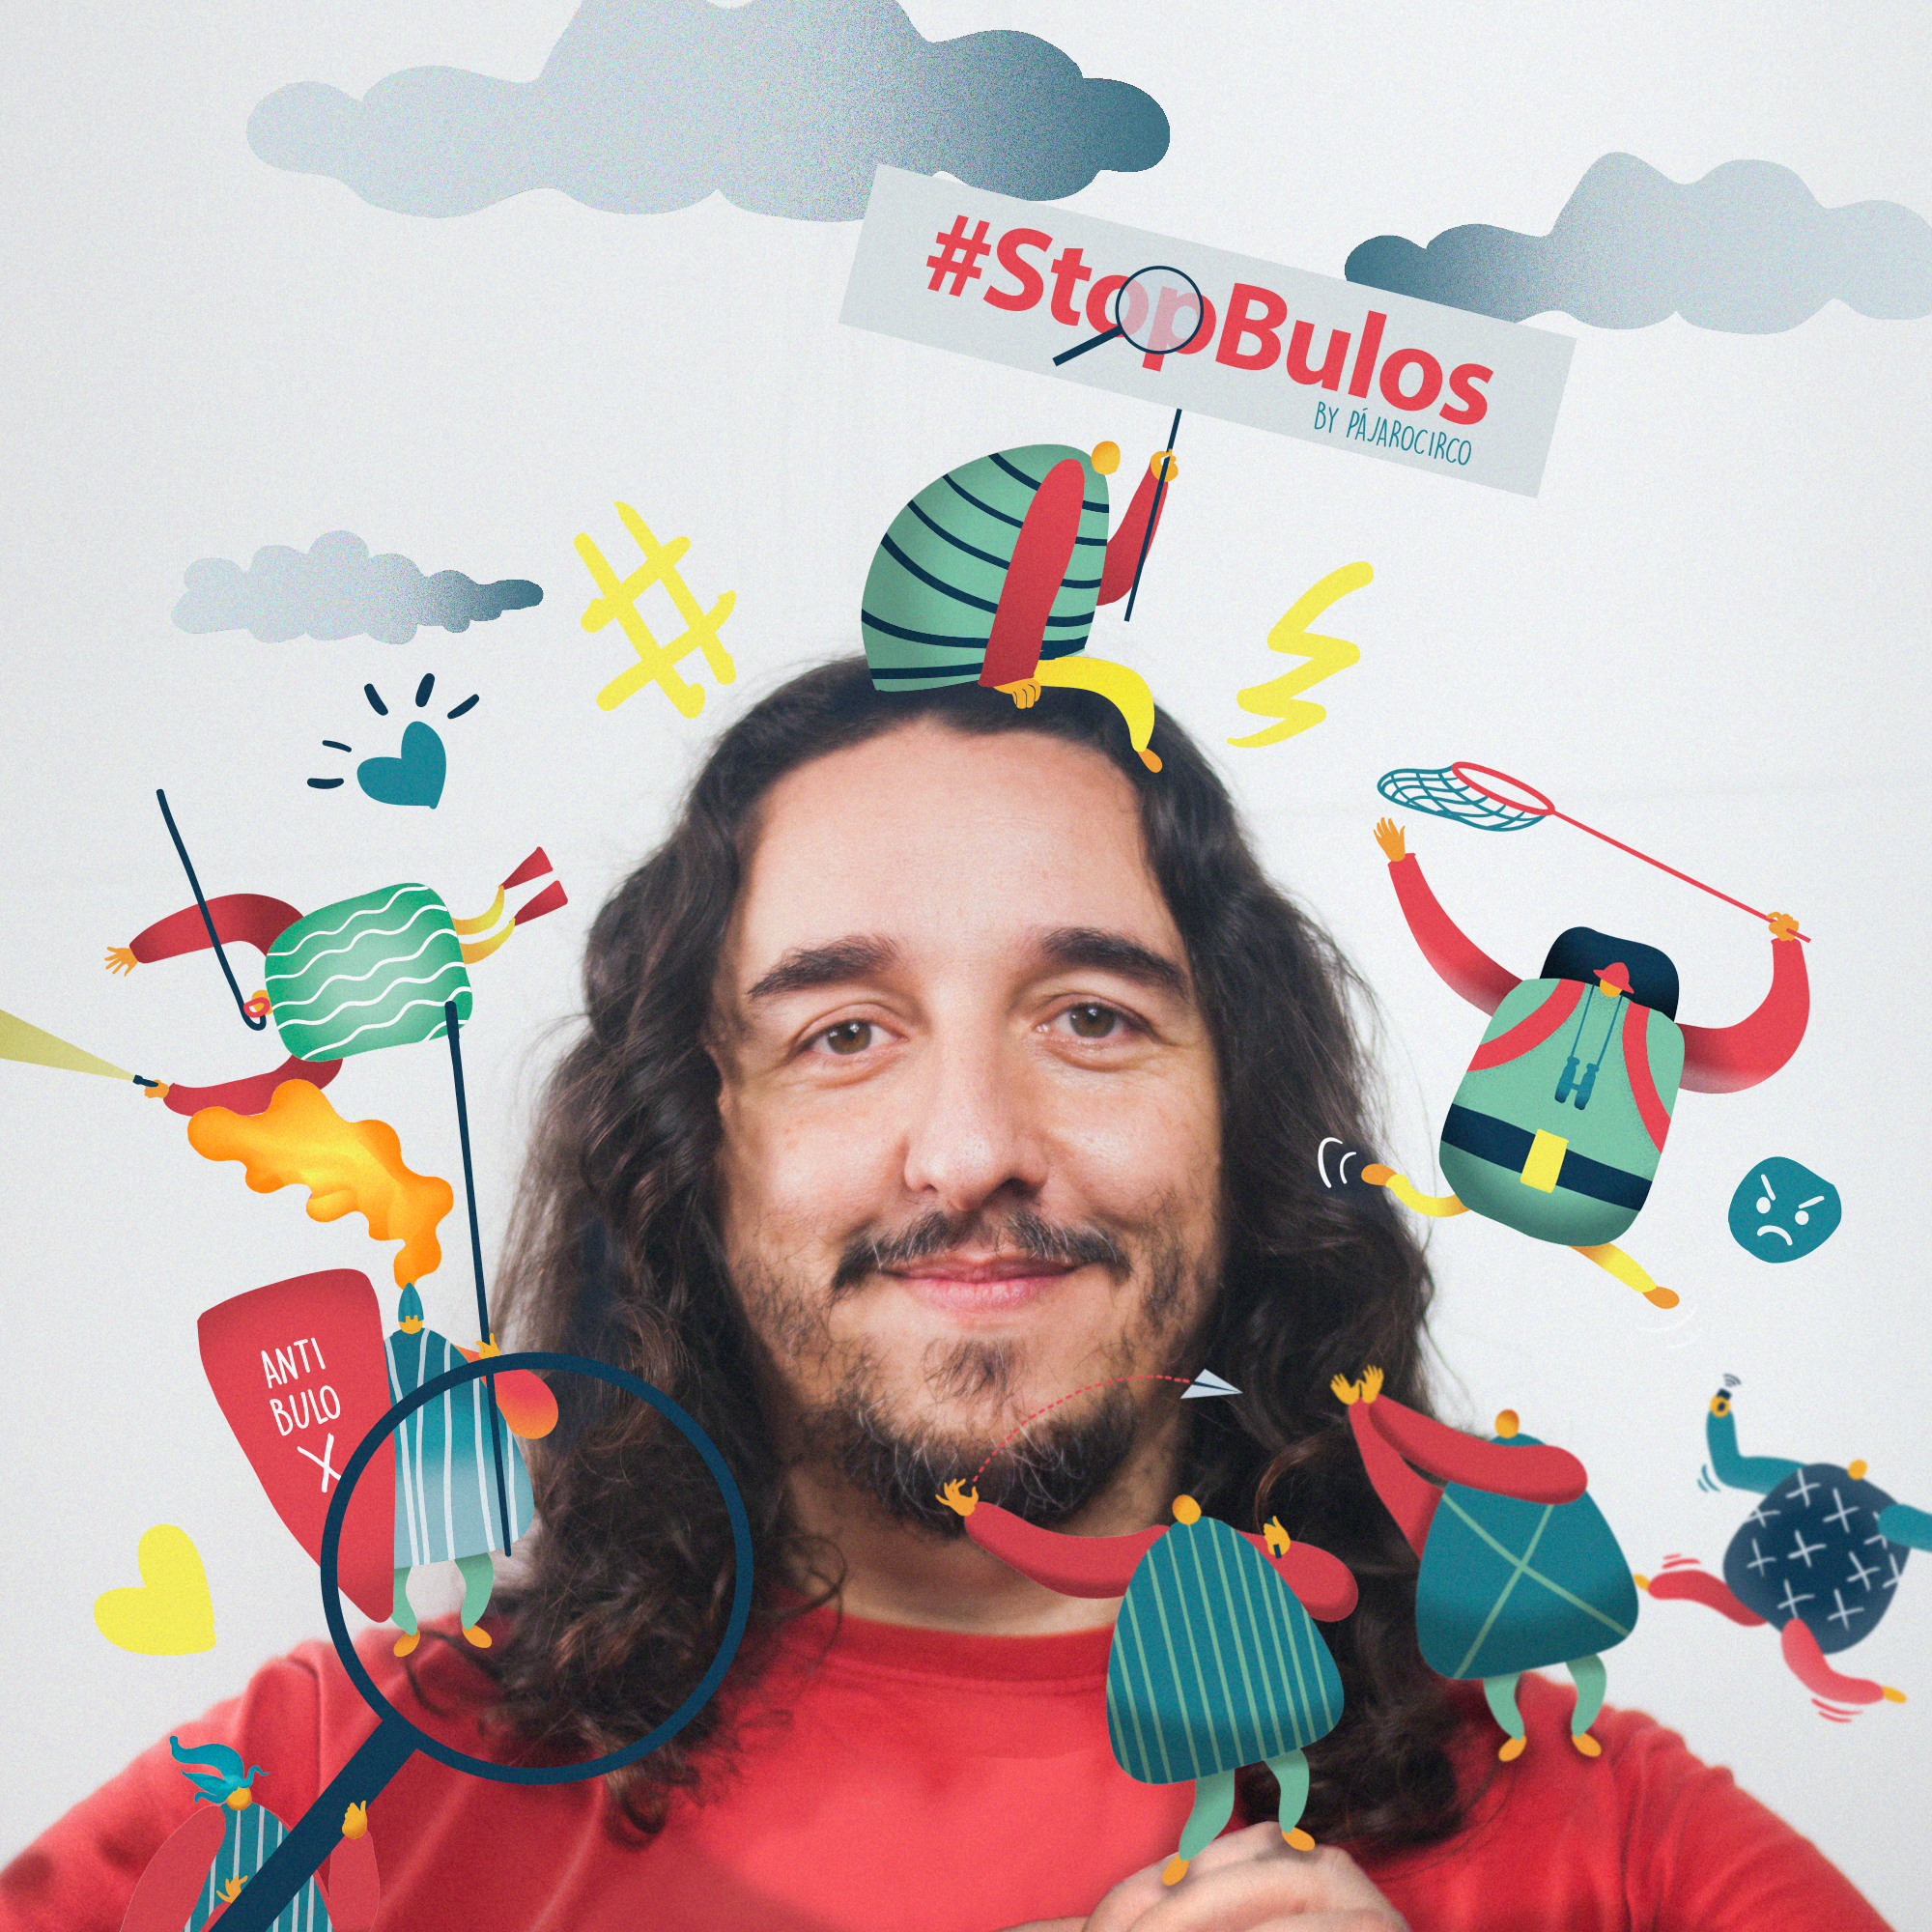 Campaña #StopBulos By Pájarocirco